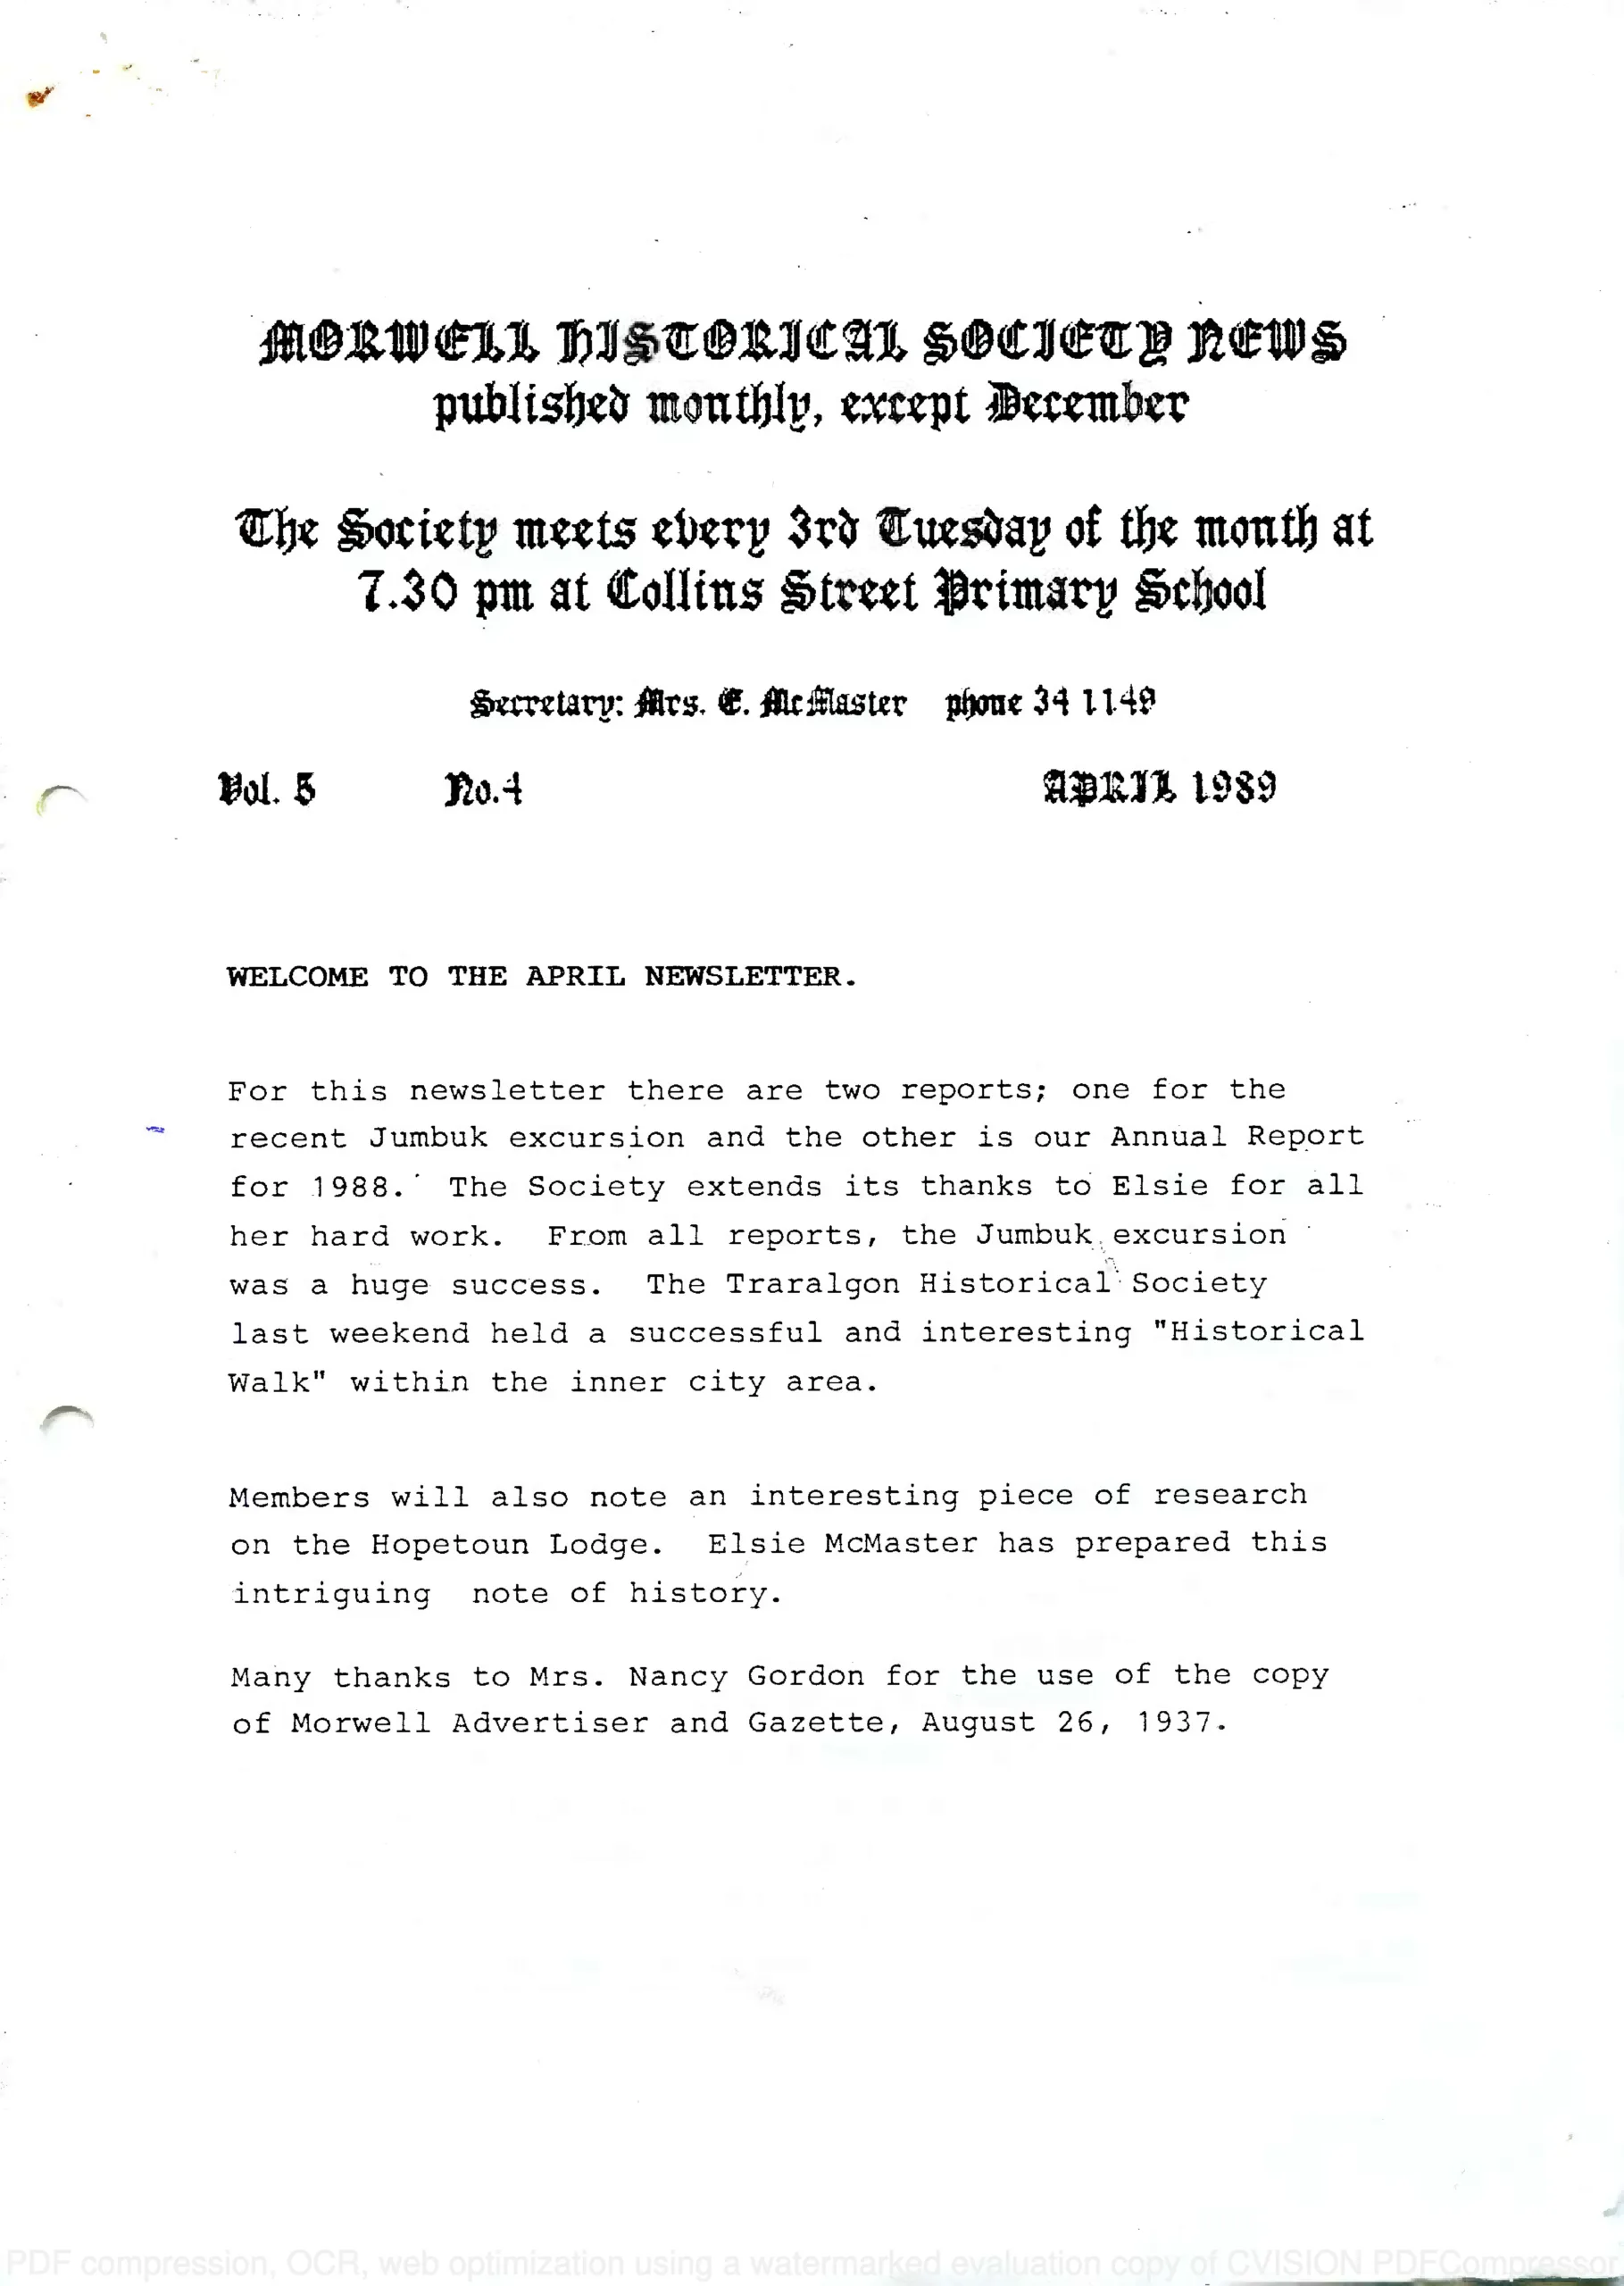 Newsletter April 1989